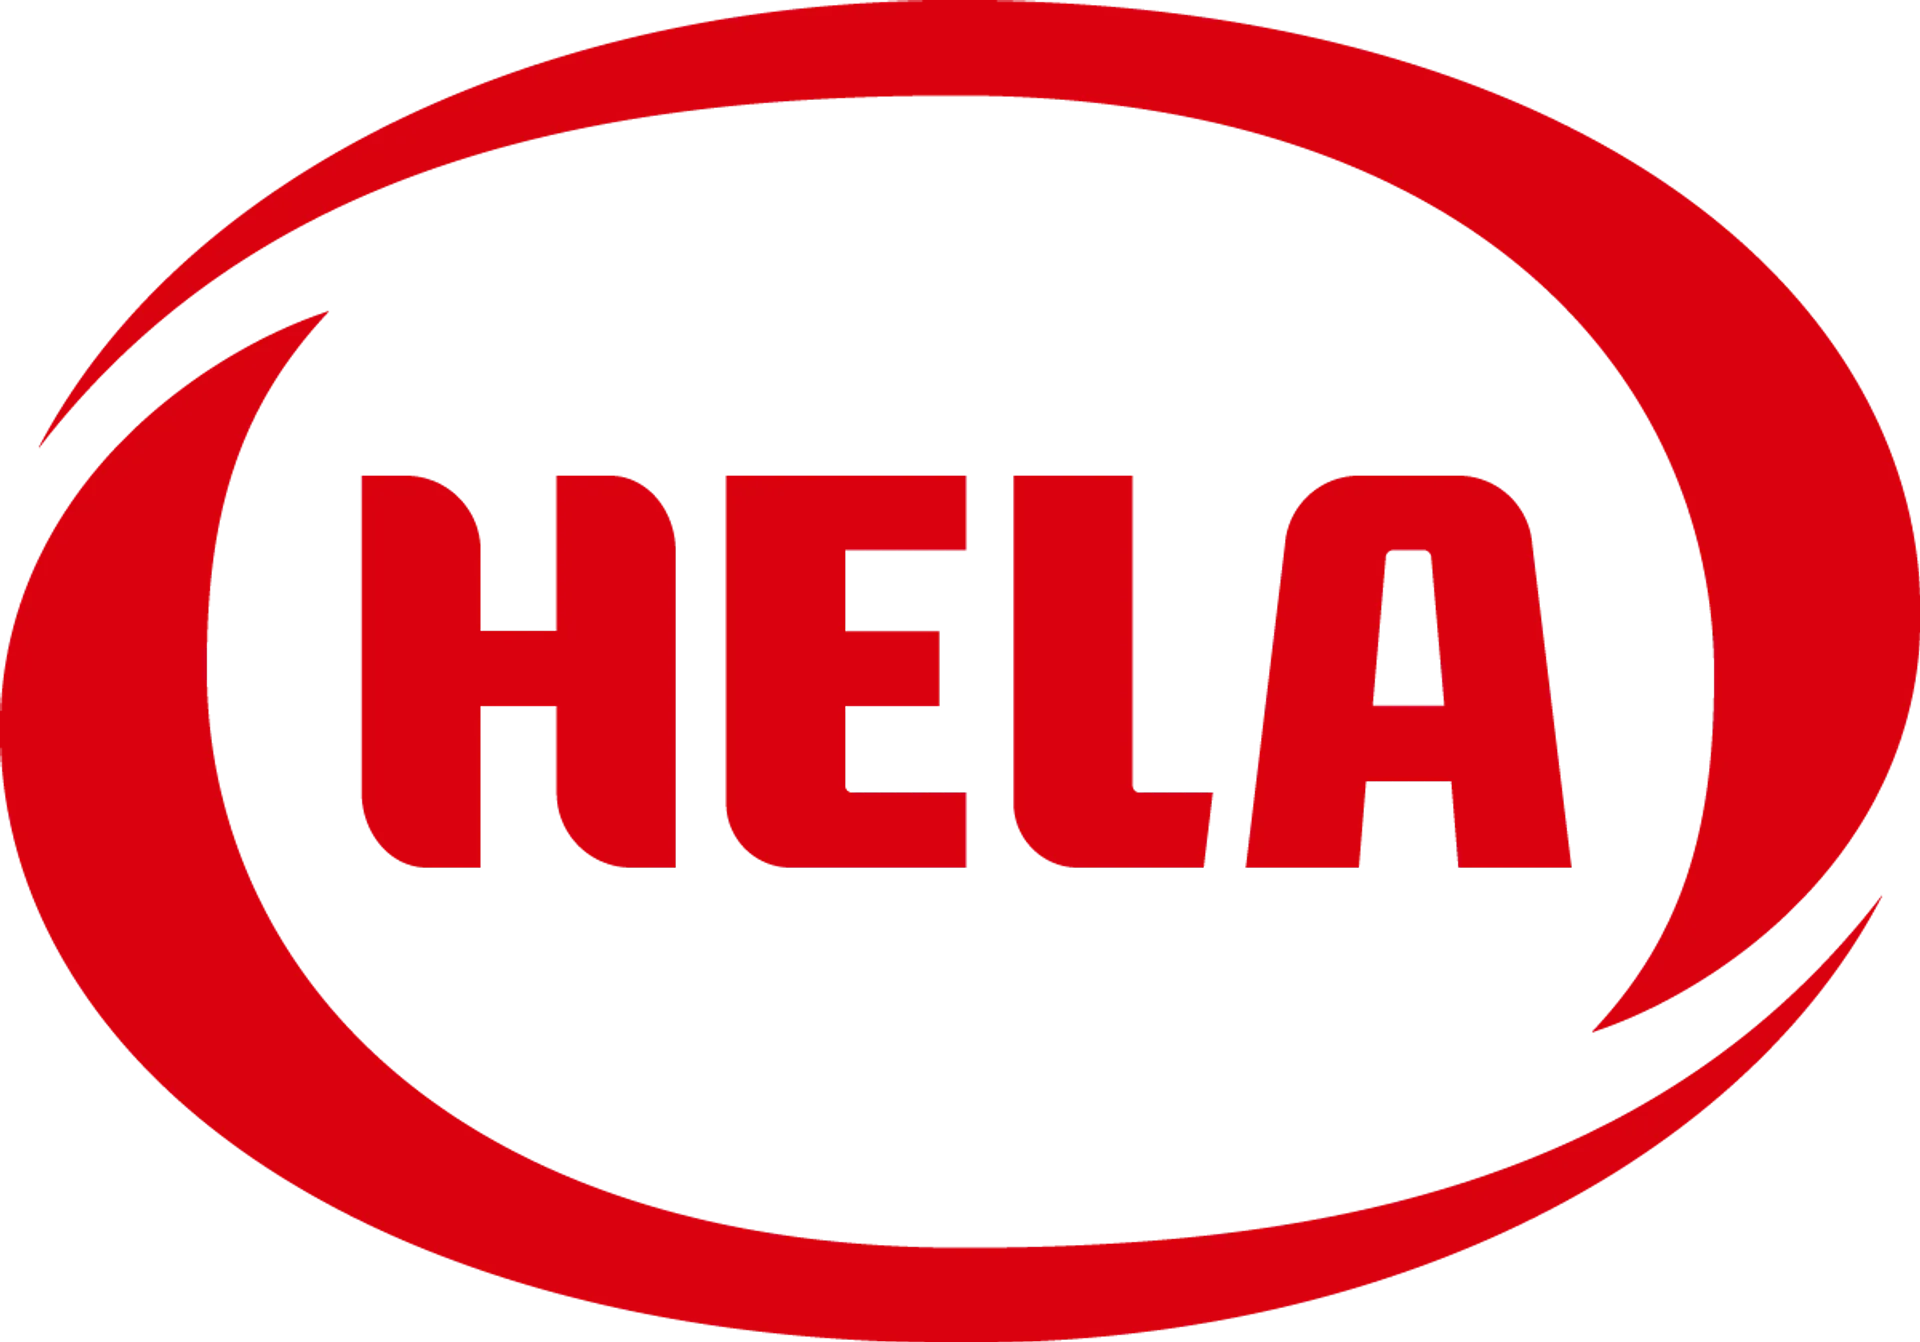 HELA logo